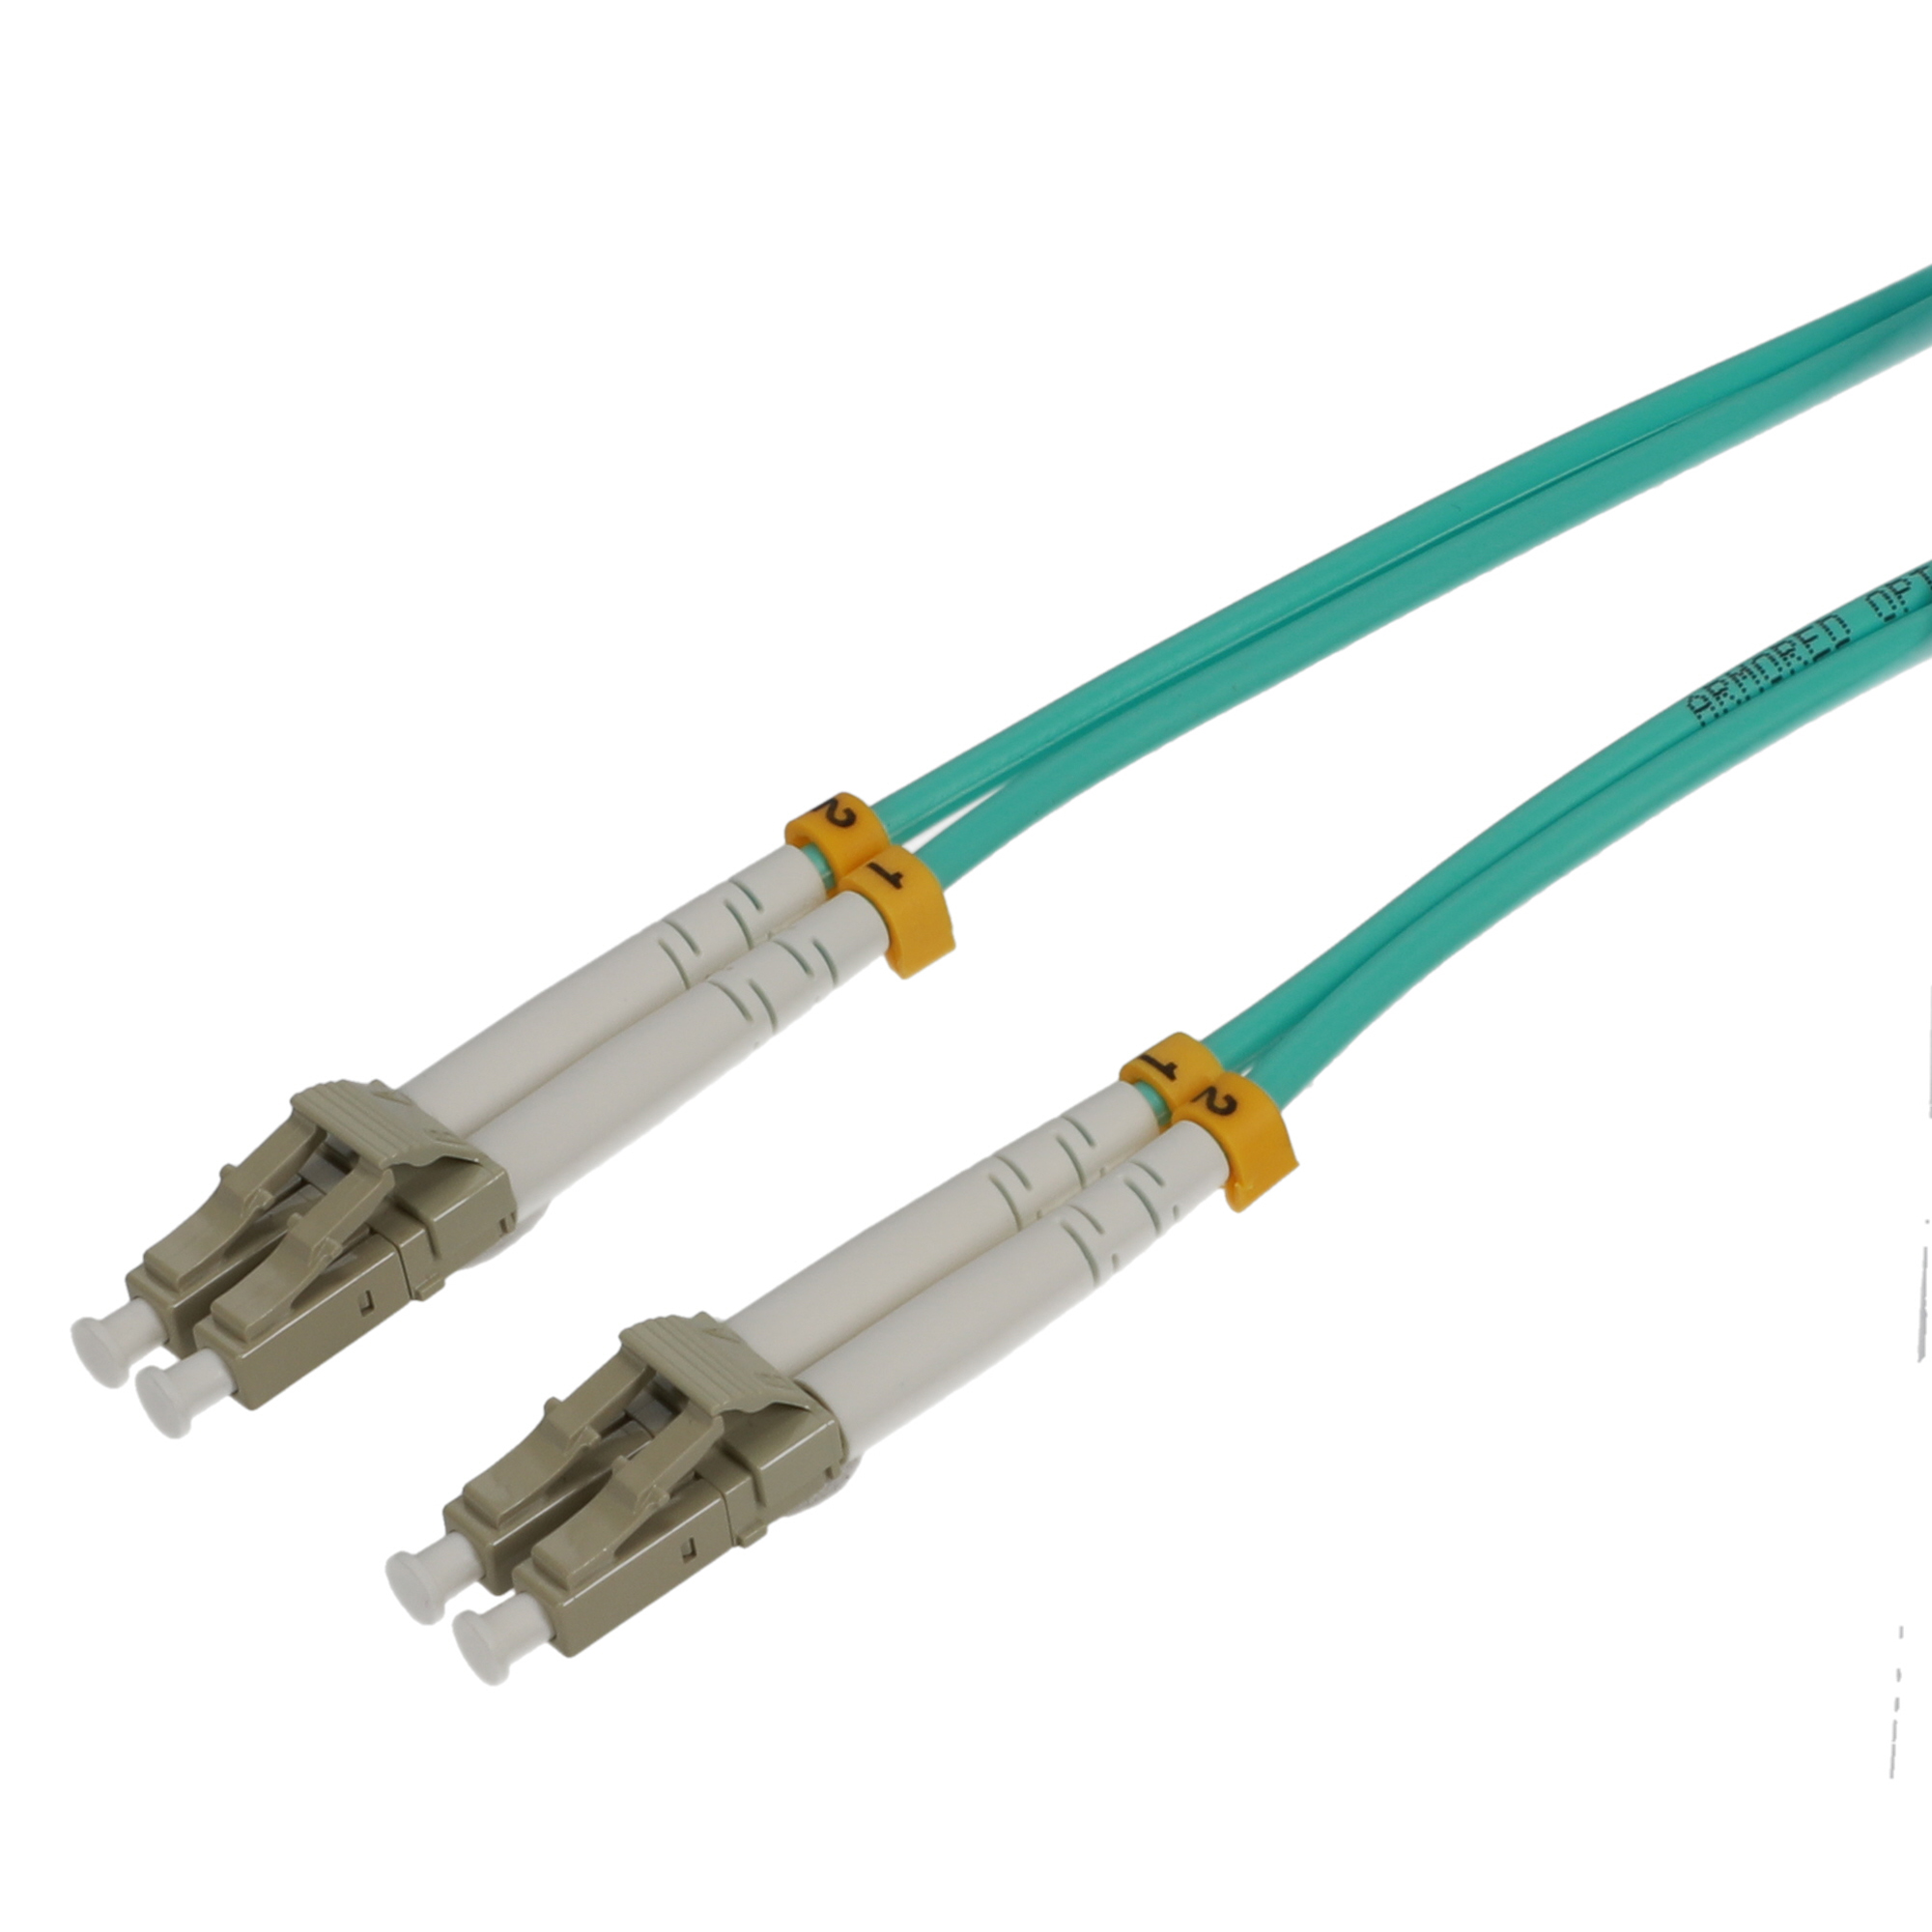 1m LC/UPC-LC/UPC Armored OM4 Duplex Fiber Optic Cable